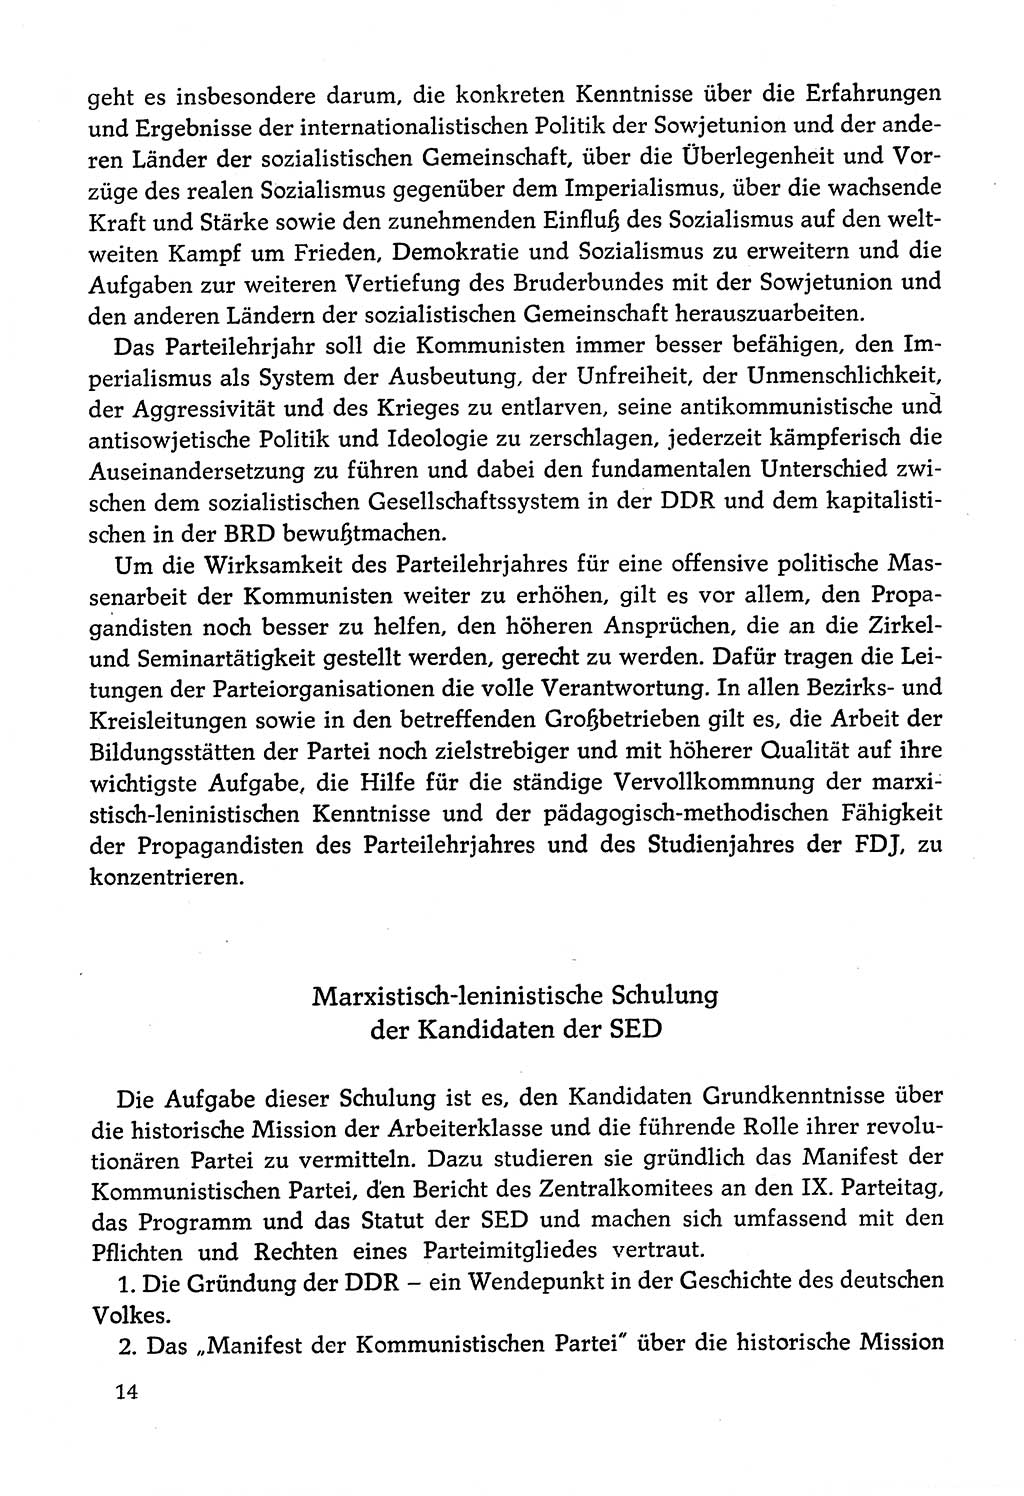 Dokumente der Sozialistischen Einheitspartei Deutschlands (SED) [Deutsche Demokratische Republik (DDR)] 1978-1979, Seite 14 (Dok. SED DDR 1978-1979, S. 14)